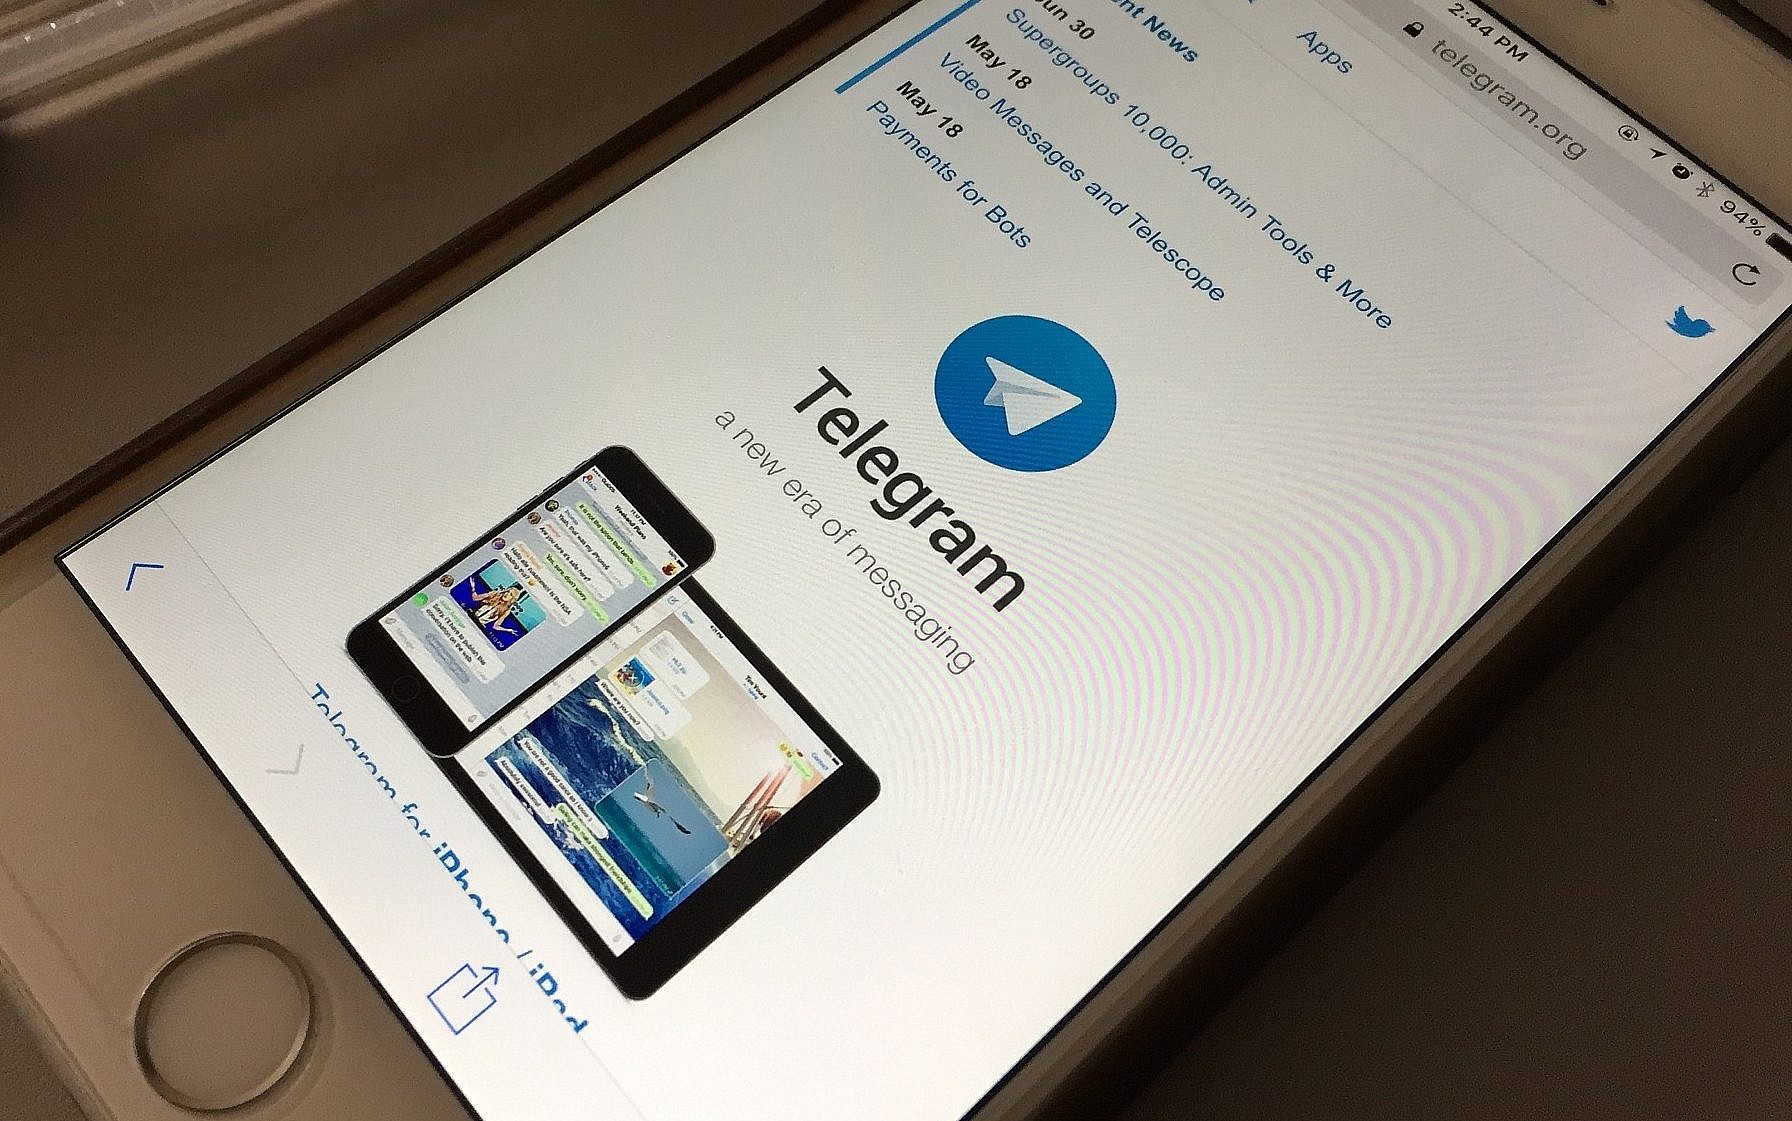 دولت آلمان در اندیشه ممنوعیت تلگرام/ دلیل: انتشار اخبار جعلی و تهدید به مرگ